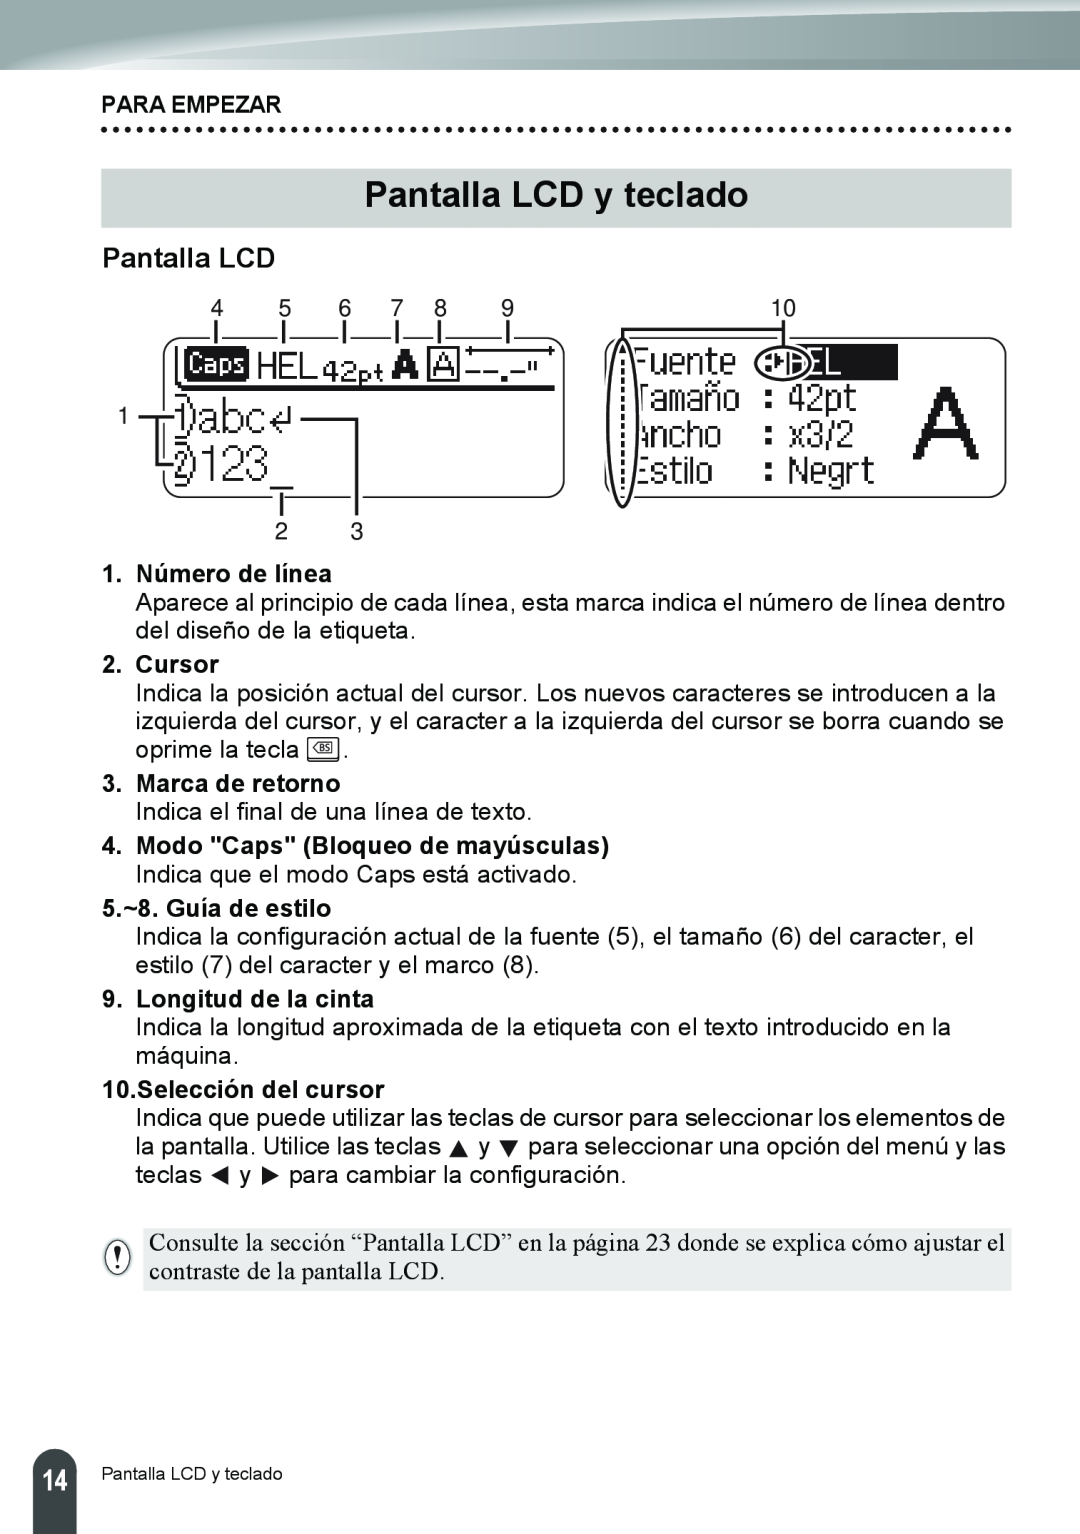 Brother PT-2110 Pantalla LCD y teclado, Para Empezar, 1. Número de línea, Cursor, Marca de retorno, 5.~8. Guía de estilo 